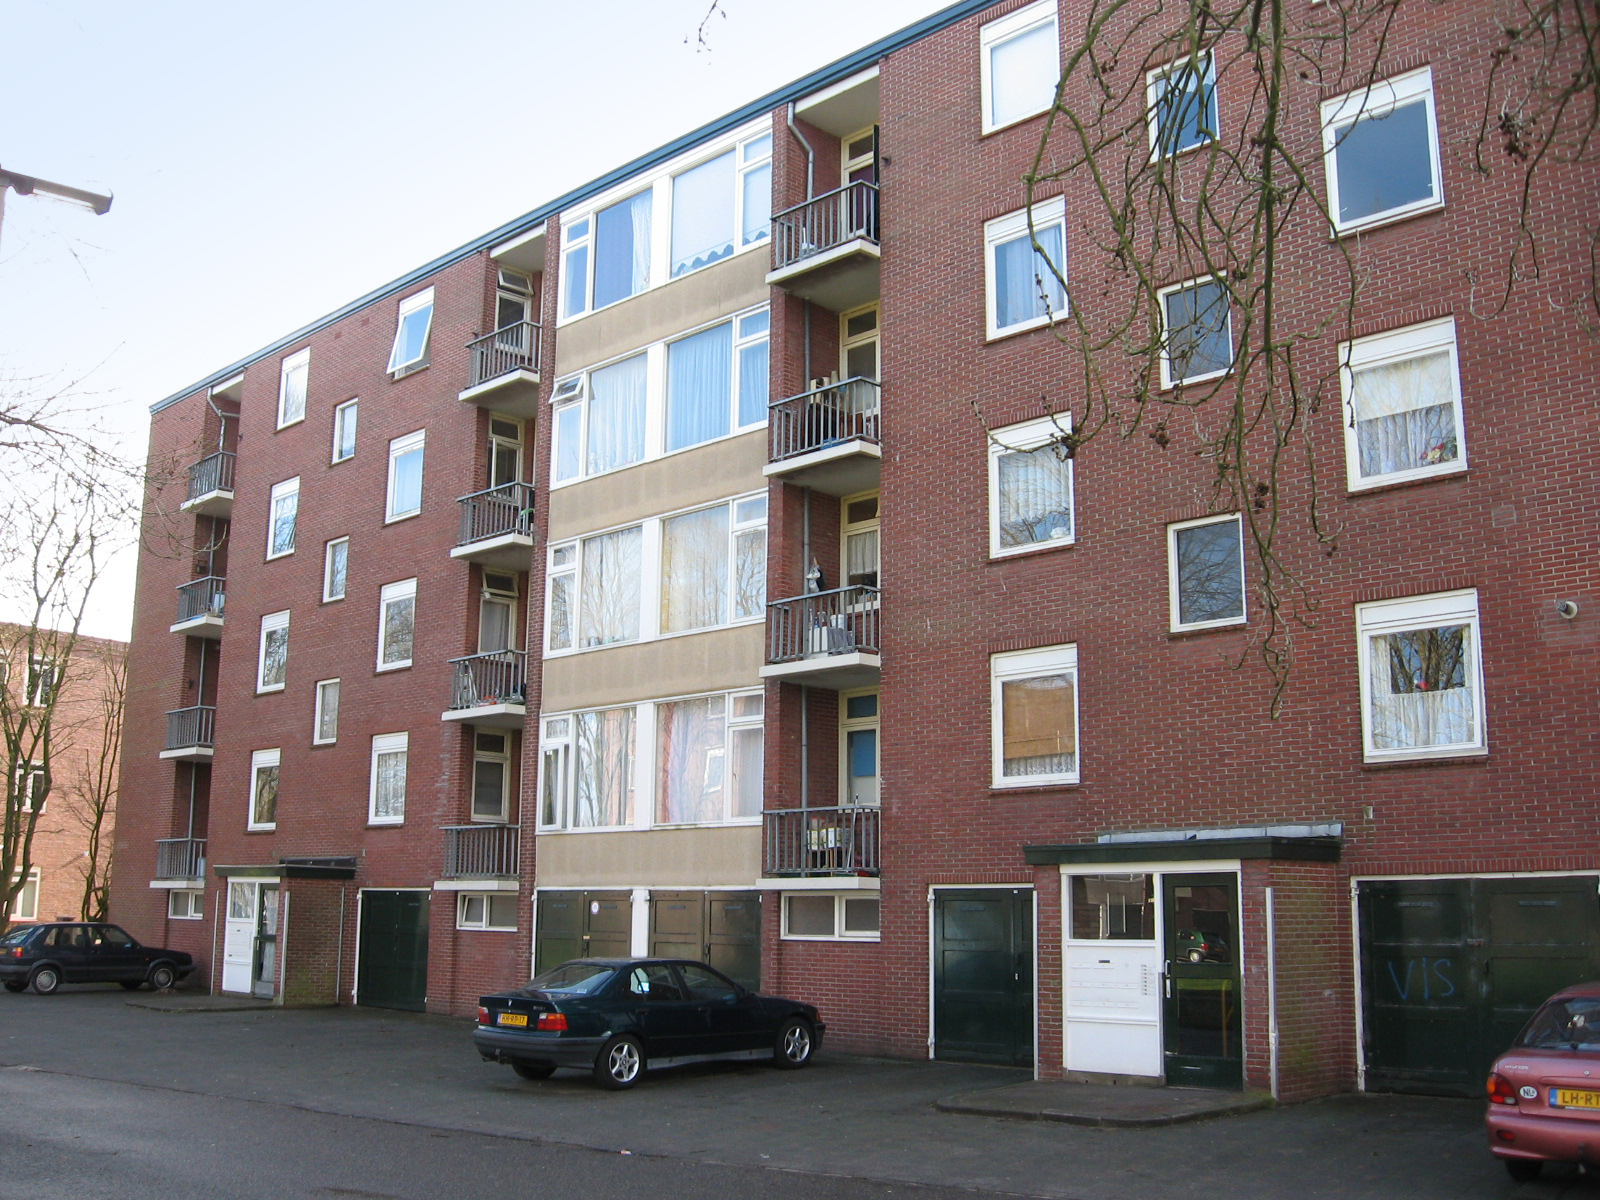 Jan Steenstraat 77, 7606 XX Almelo, Nederland